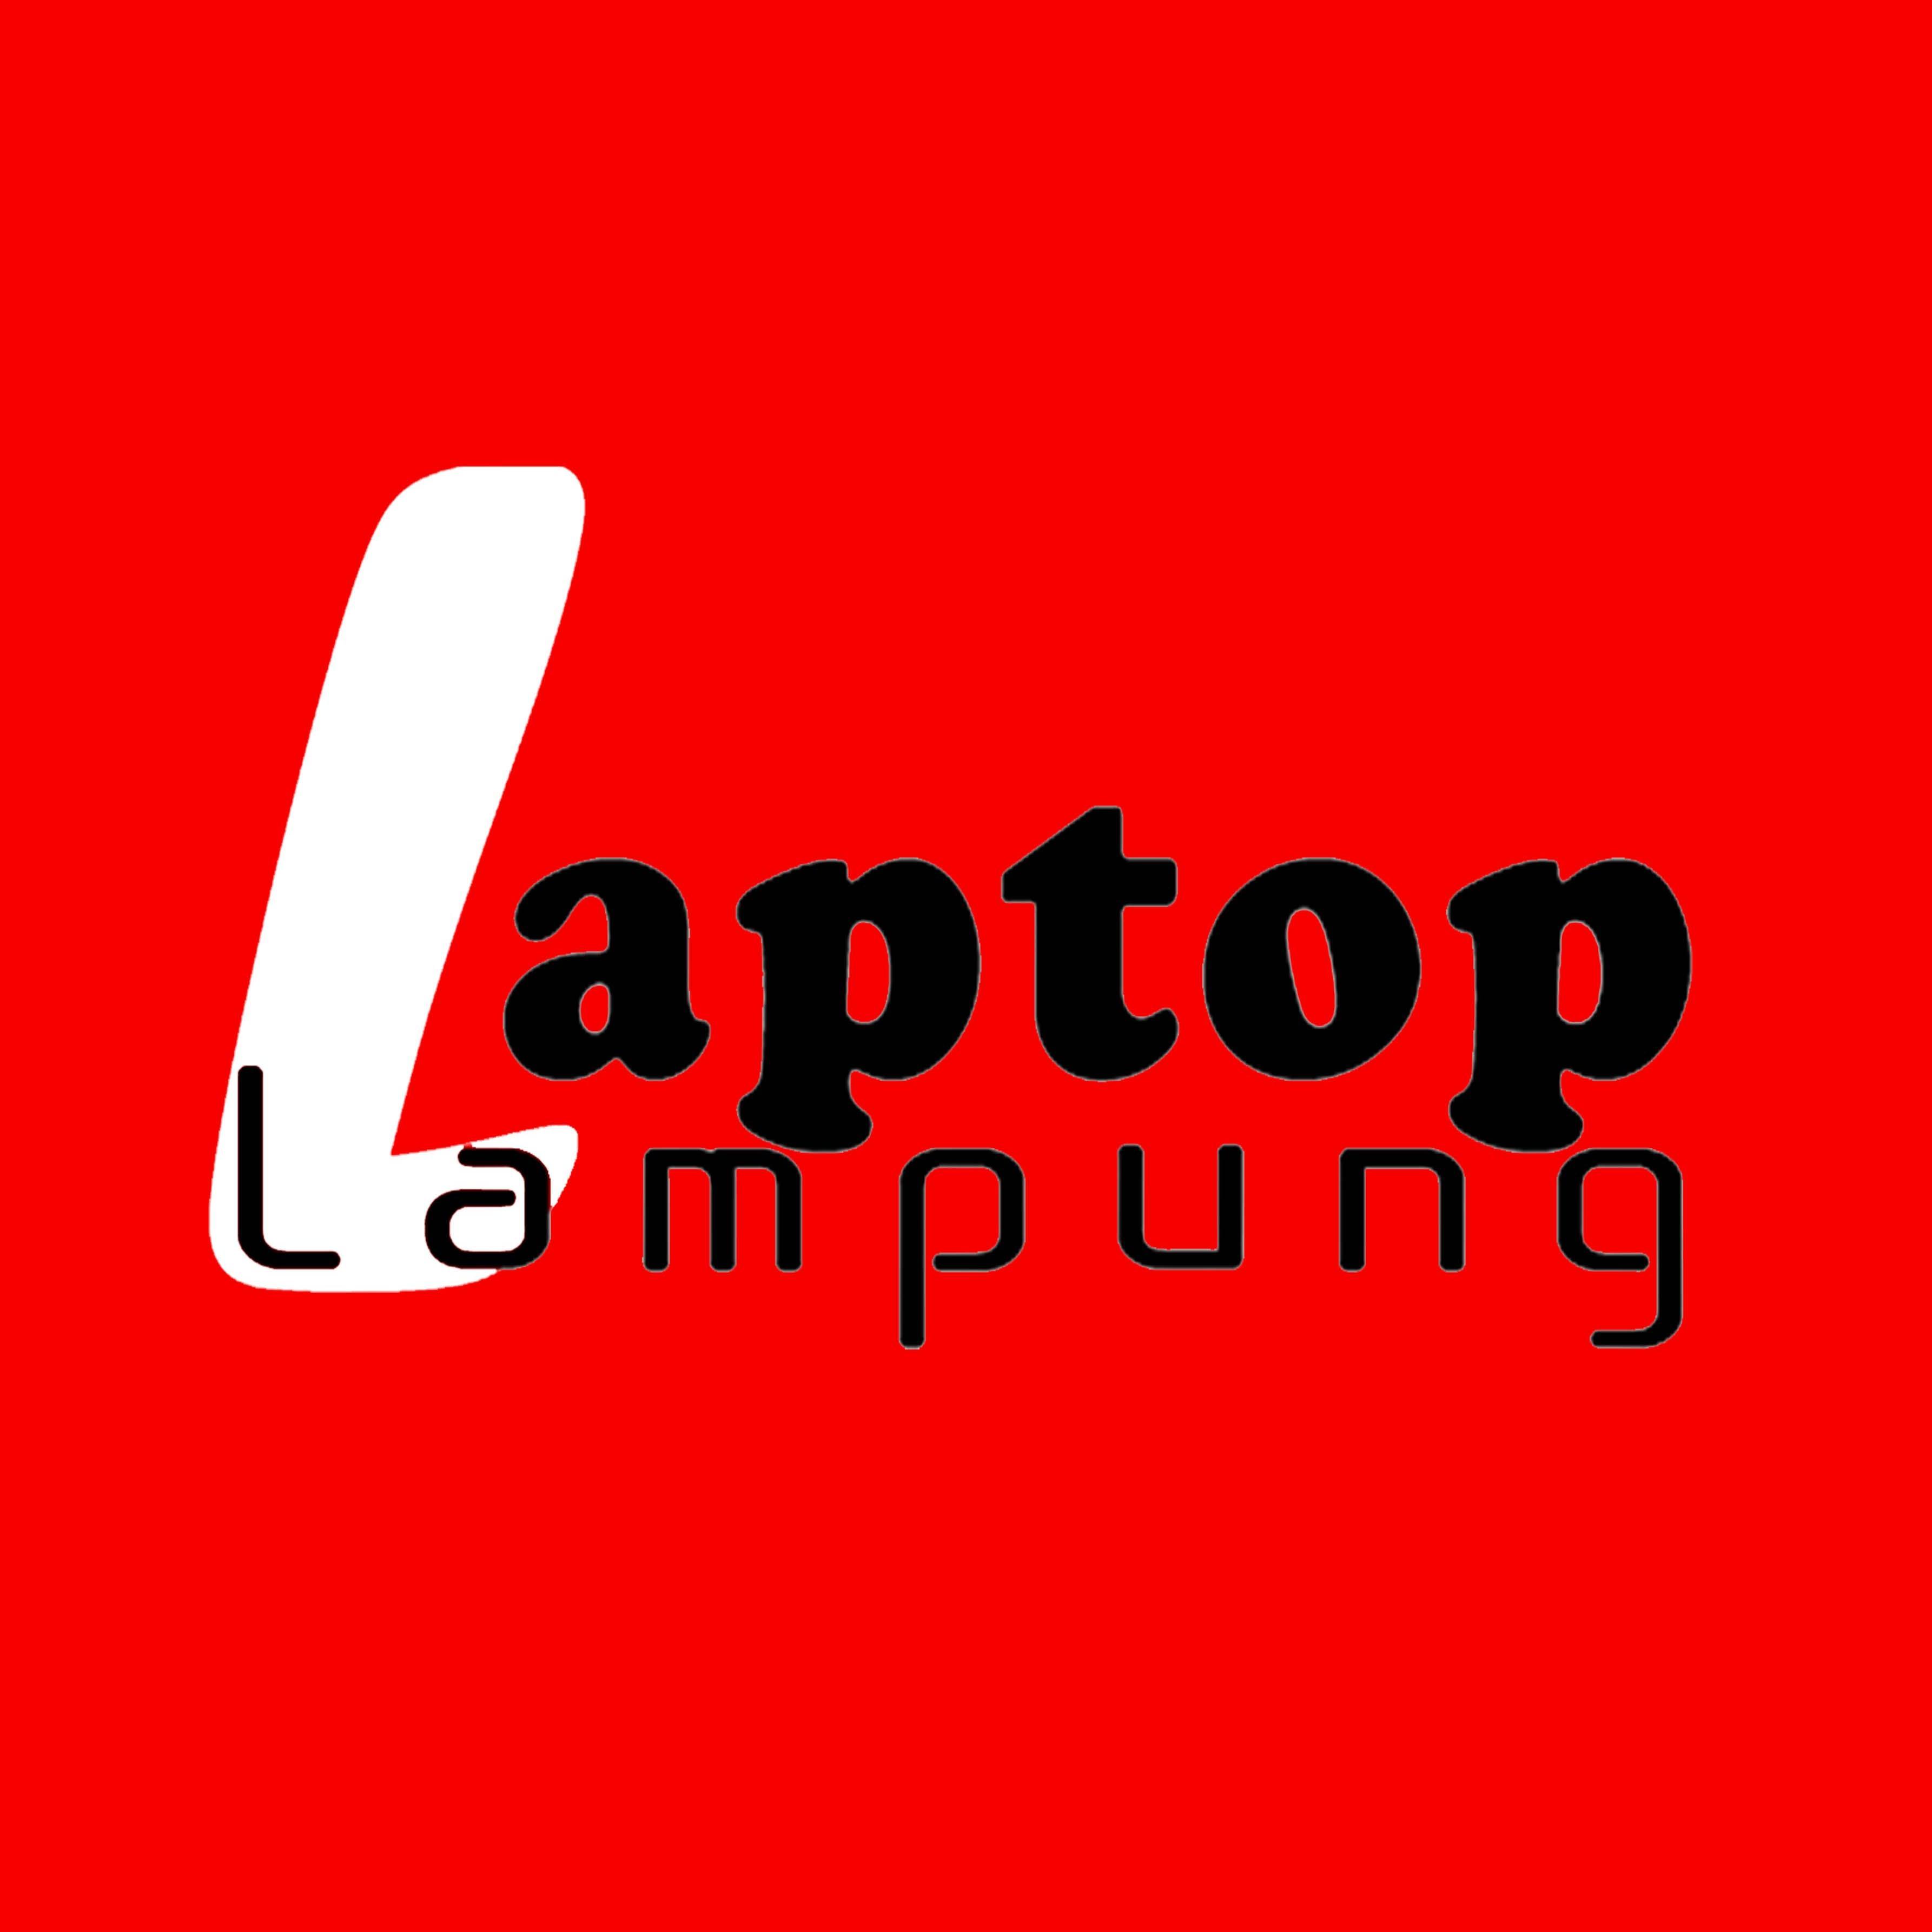 Laptop Lampung, Jl. Zaenal Abidin Pagar Alam ( Pertokoan Depan Kampus Darmajaya ) Bandar Lampung 35141
Telp (0811)-790250
admin@laptoplampung.com